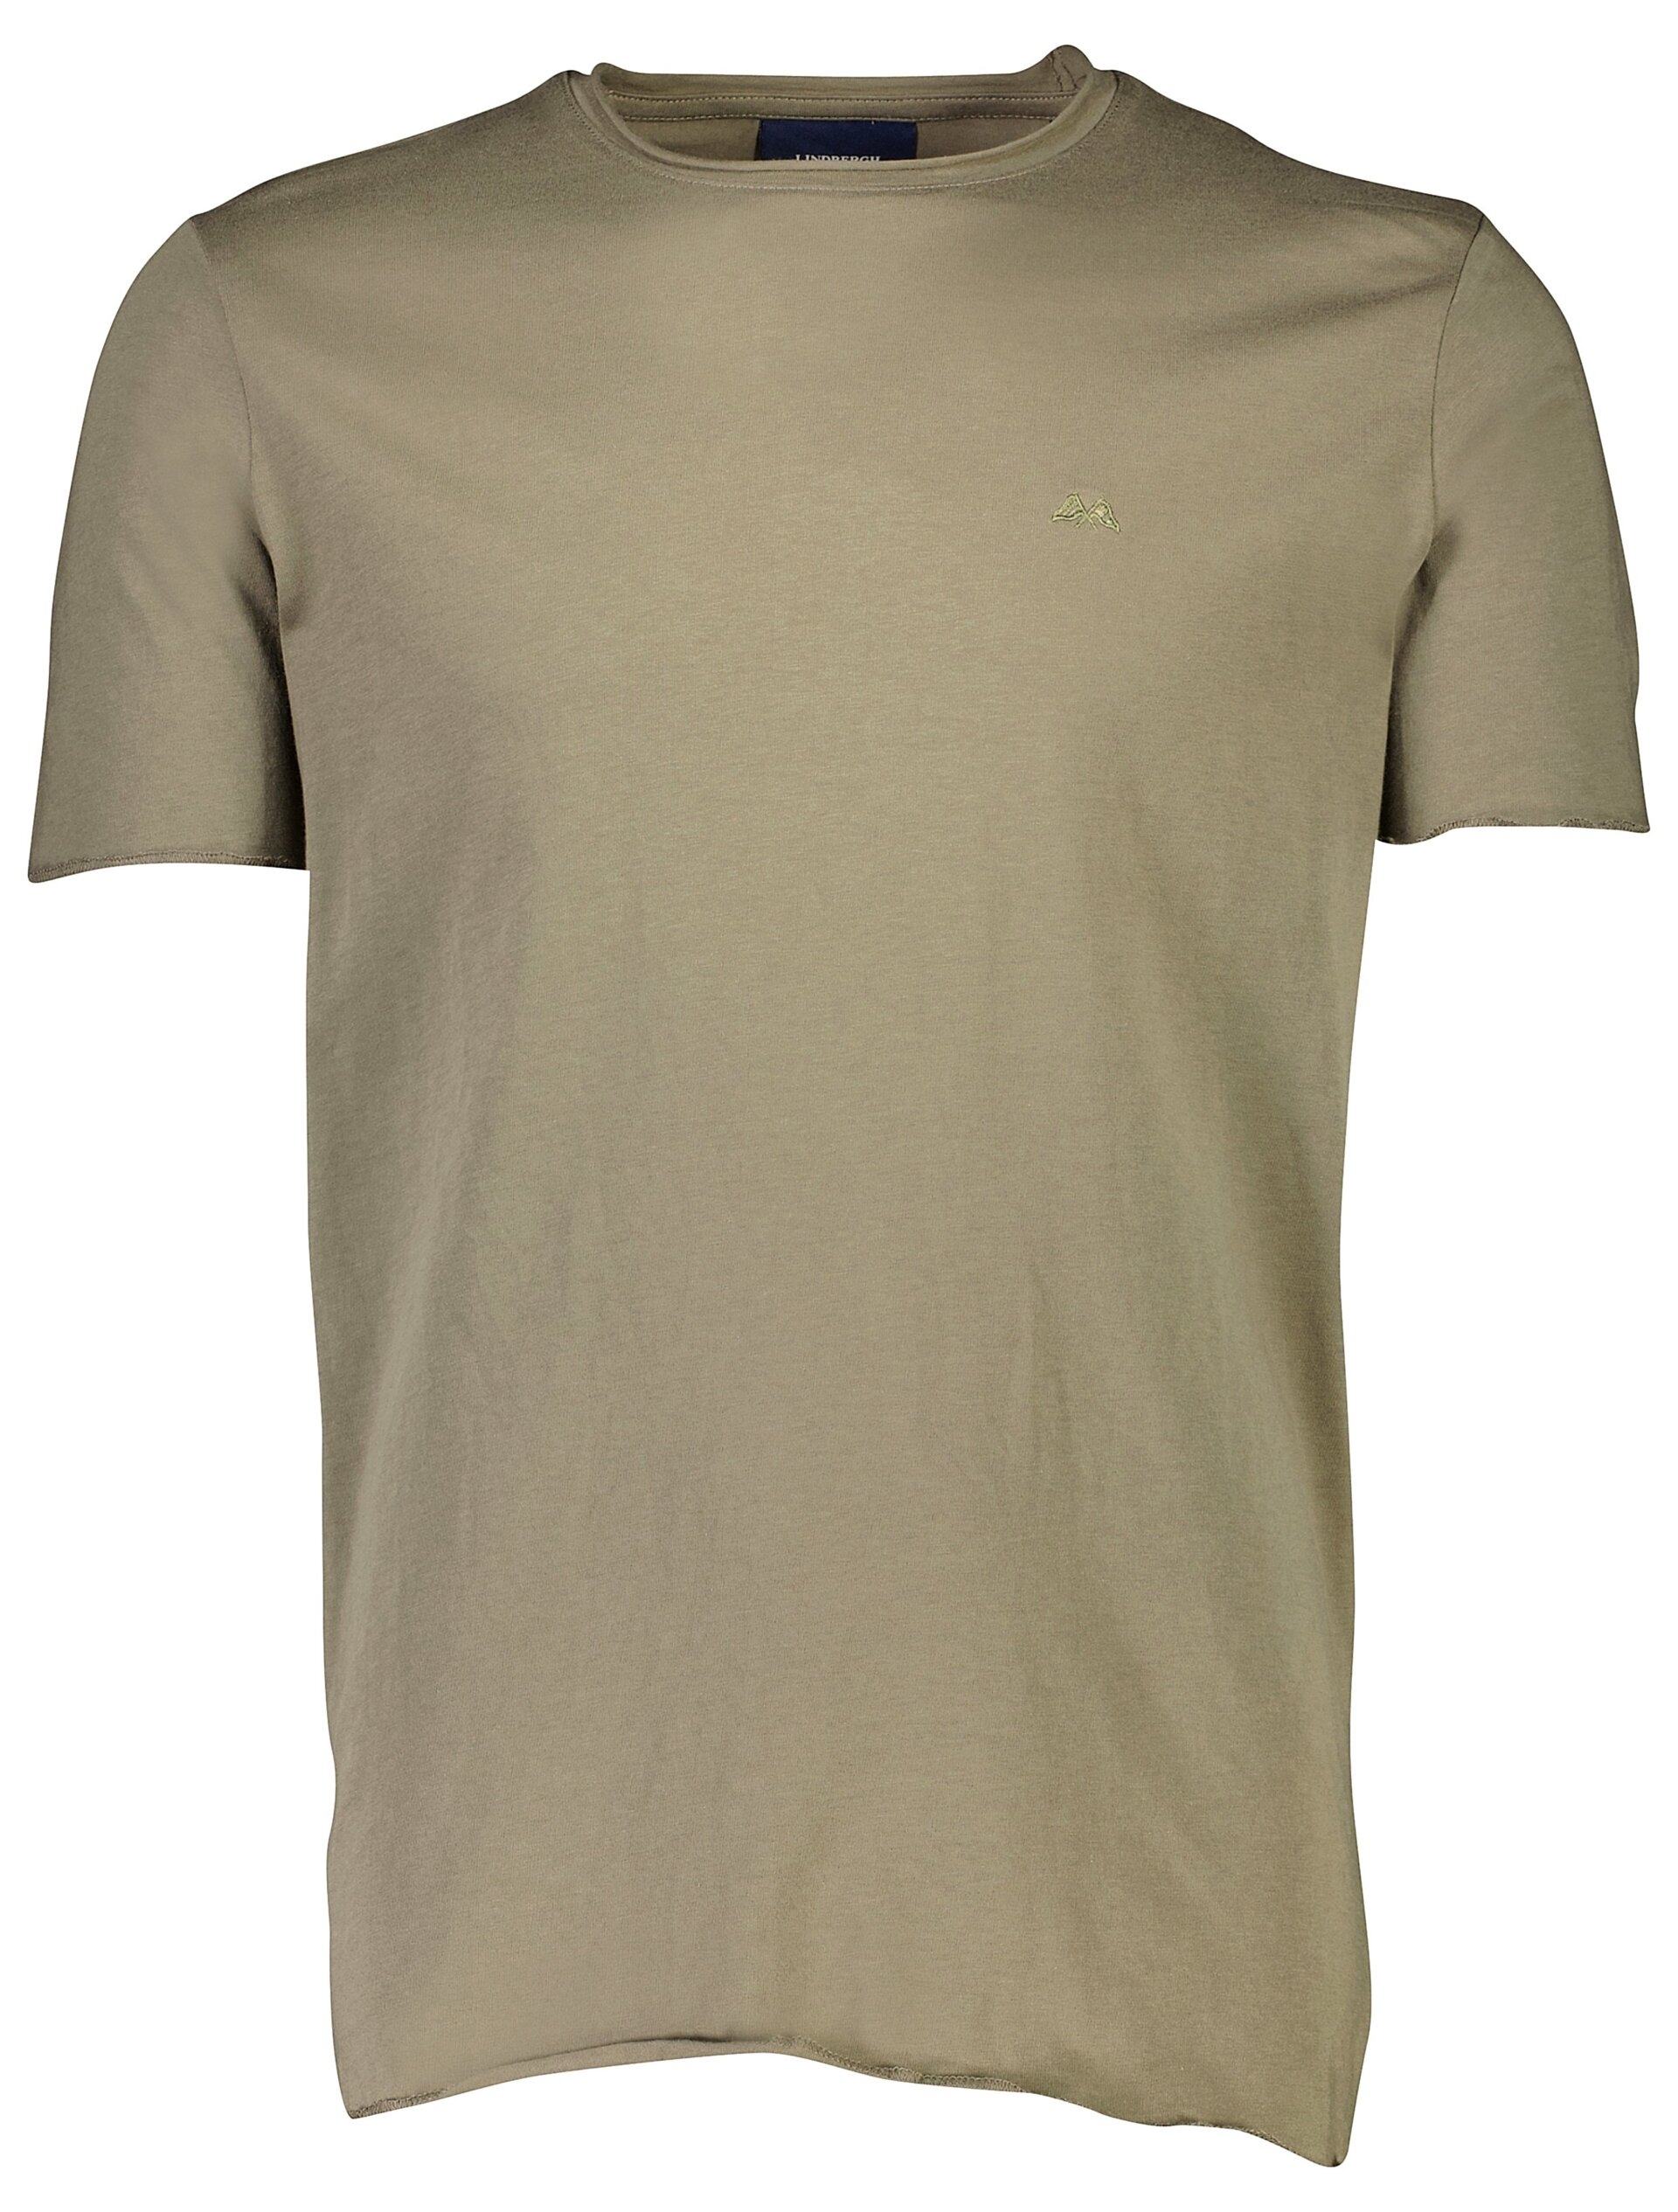 Lindbergh T-shirt grün / lt dusty army